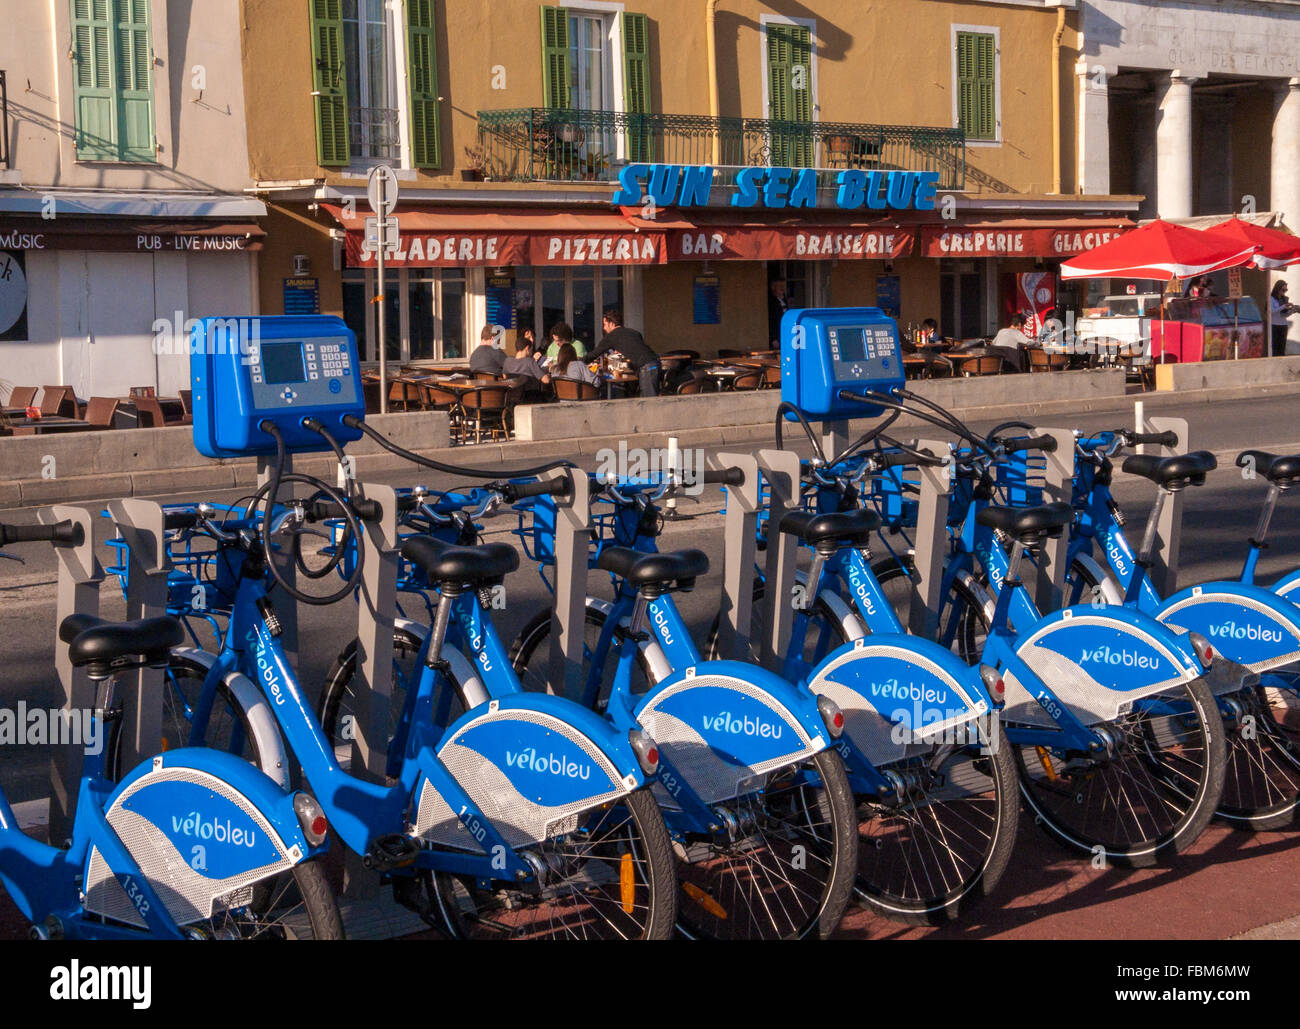 Servicio de alquiler de bicicletas azul - Niza, Francia Fotografía de stock  - Alamy